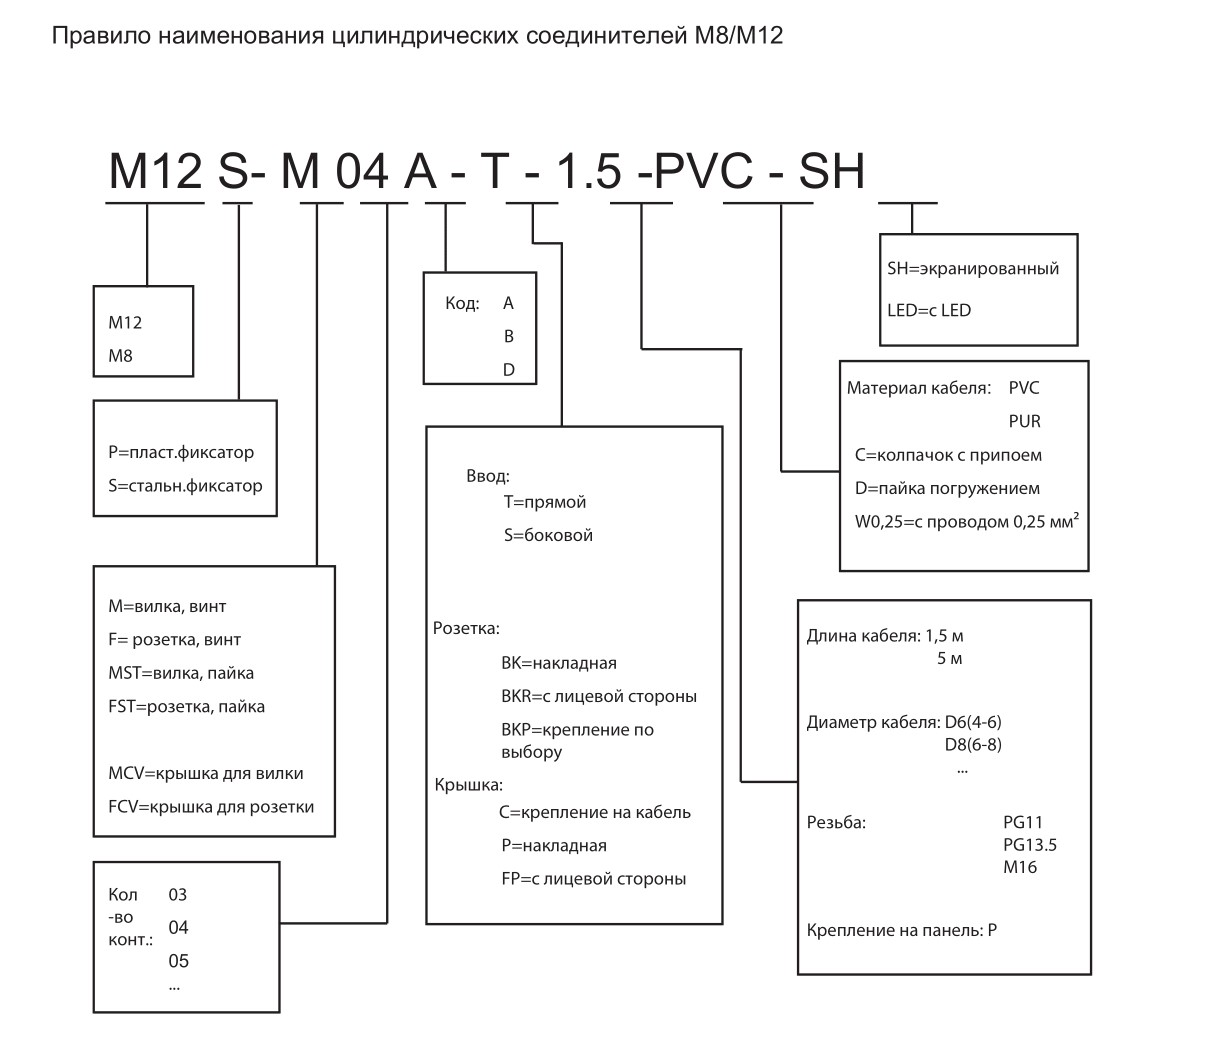 Цилиндрический соединитель-вилка/RJ45 (каб. сборка) M12-M04D-T/RJ45P-10.0-PUR-PFN 1630040014044: Структура обозначения